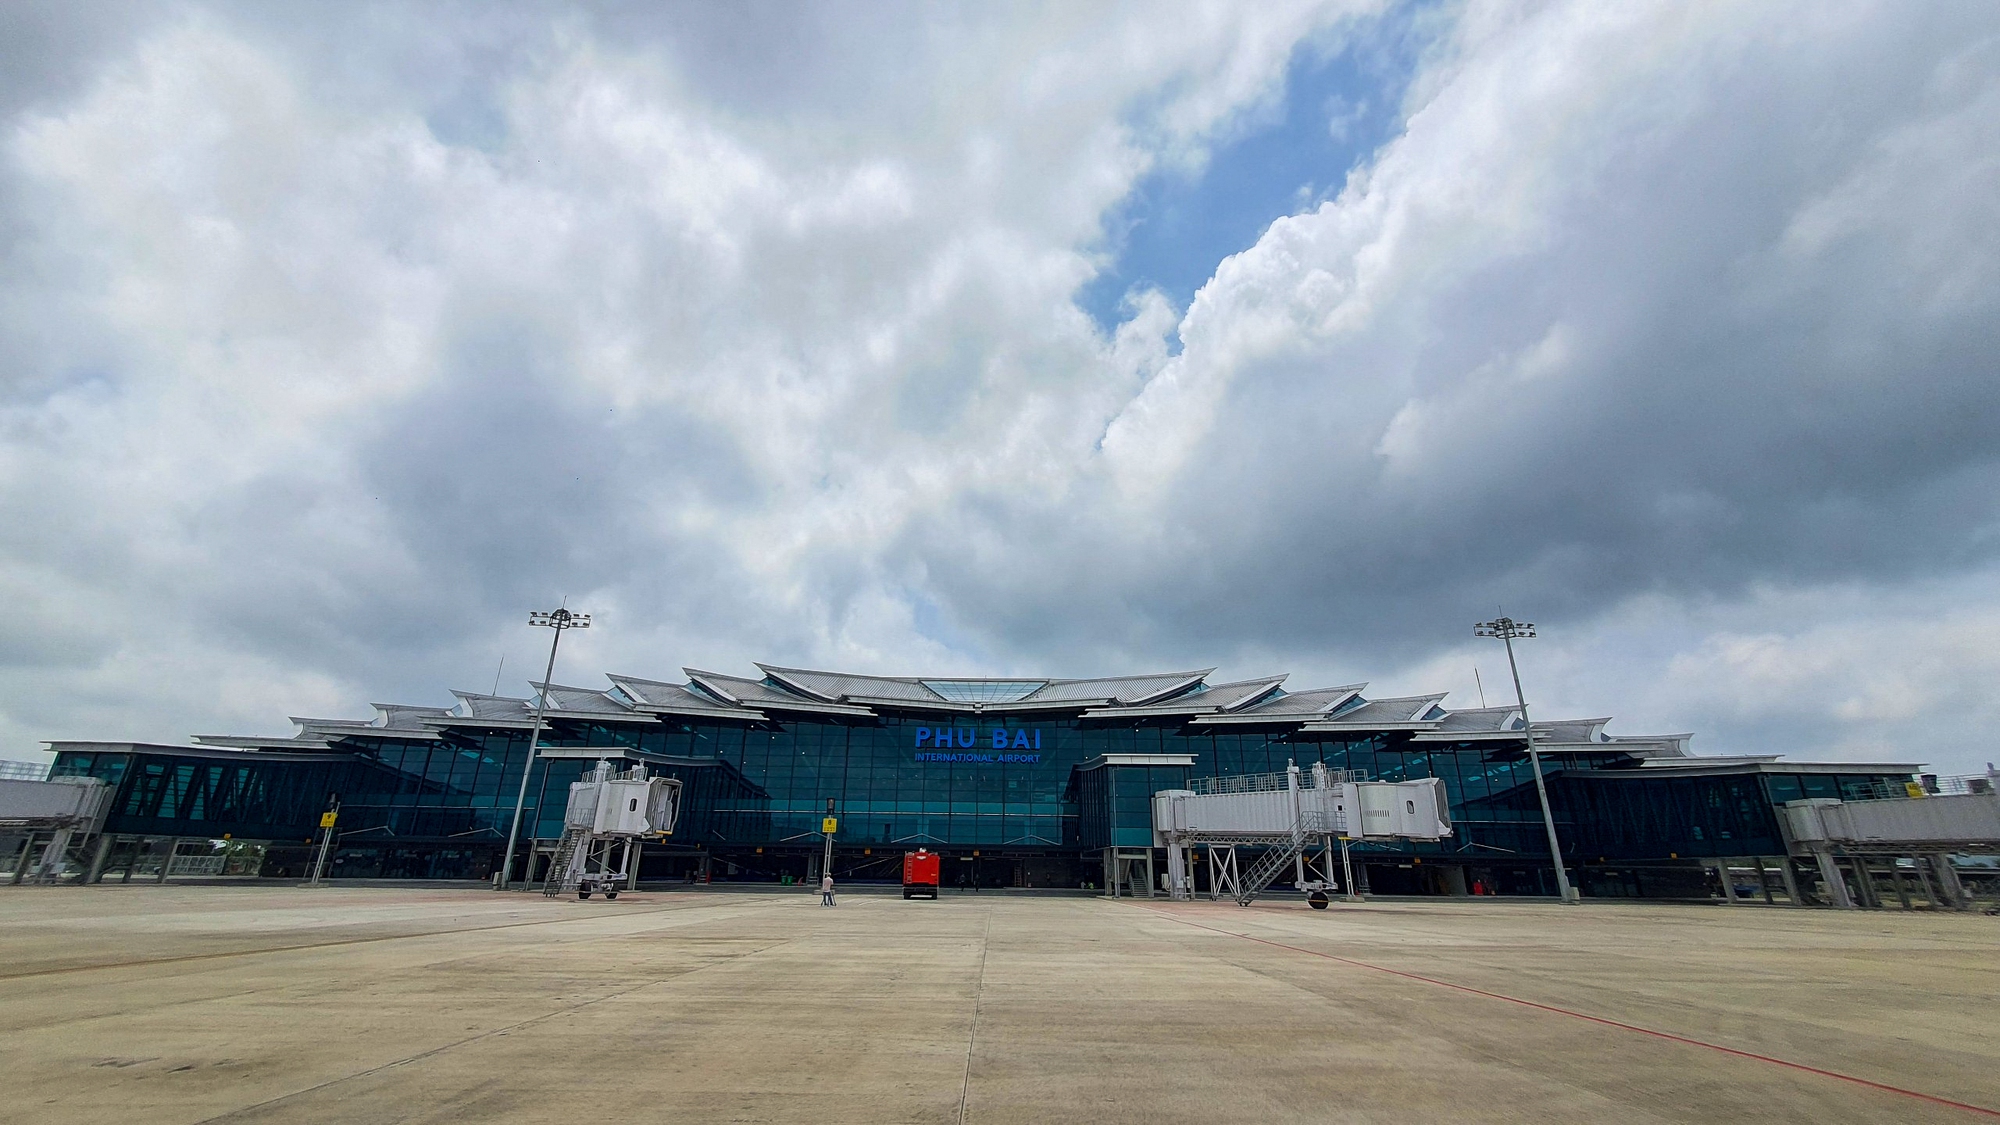 Bắt đầu đưa vào khai thác Nhà ga T2 – Cảng hàng không quốc tế Phú Bài - Ảnh 1.